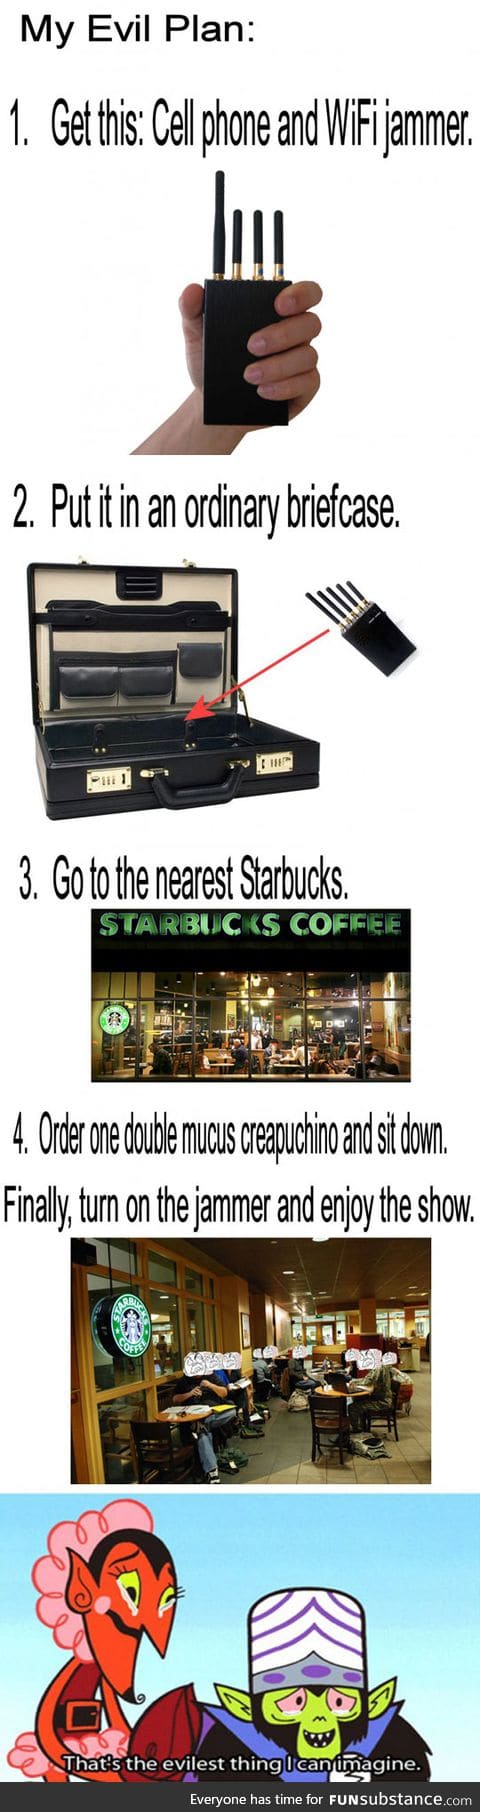 Evil Starbucks plan